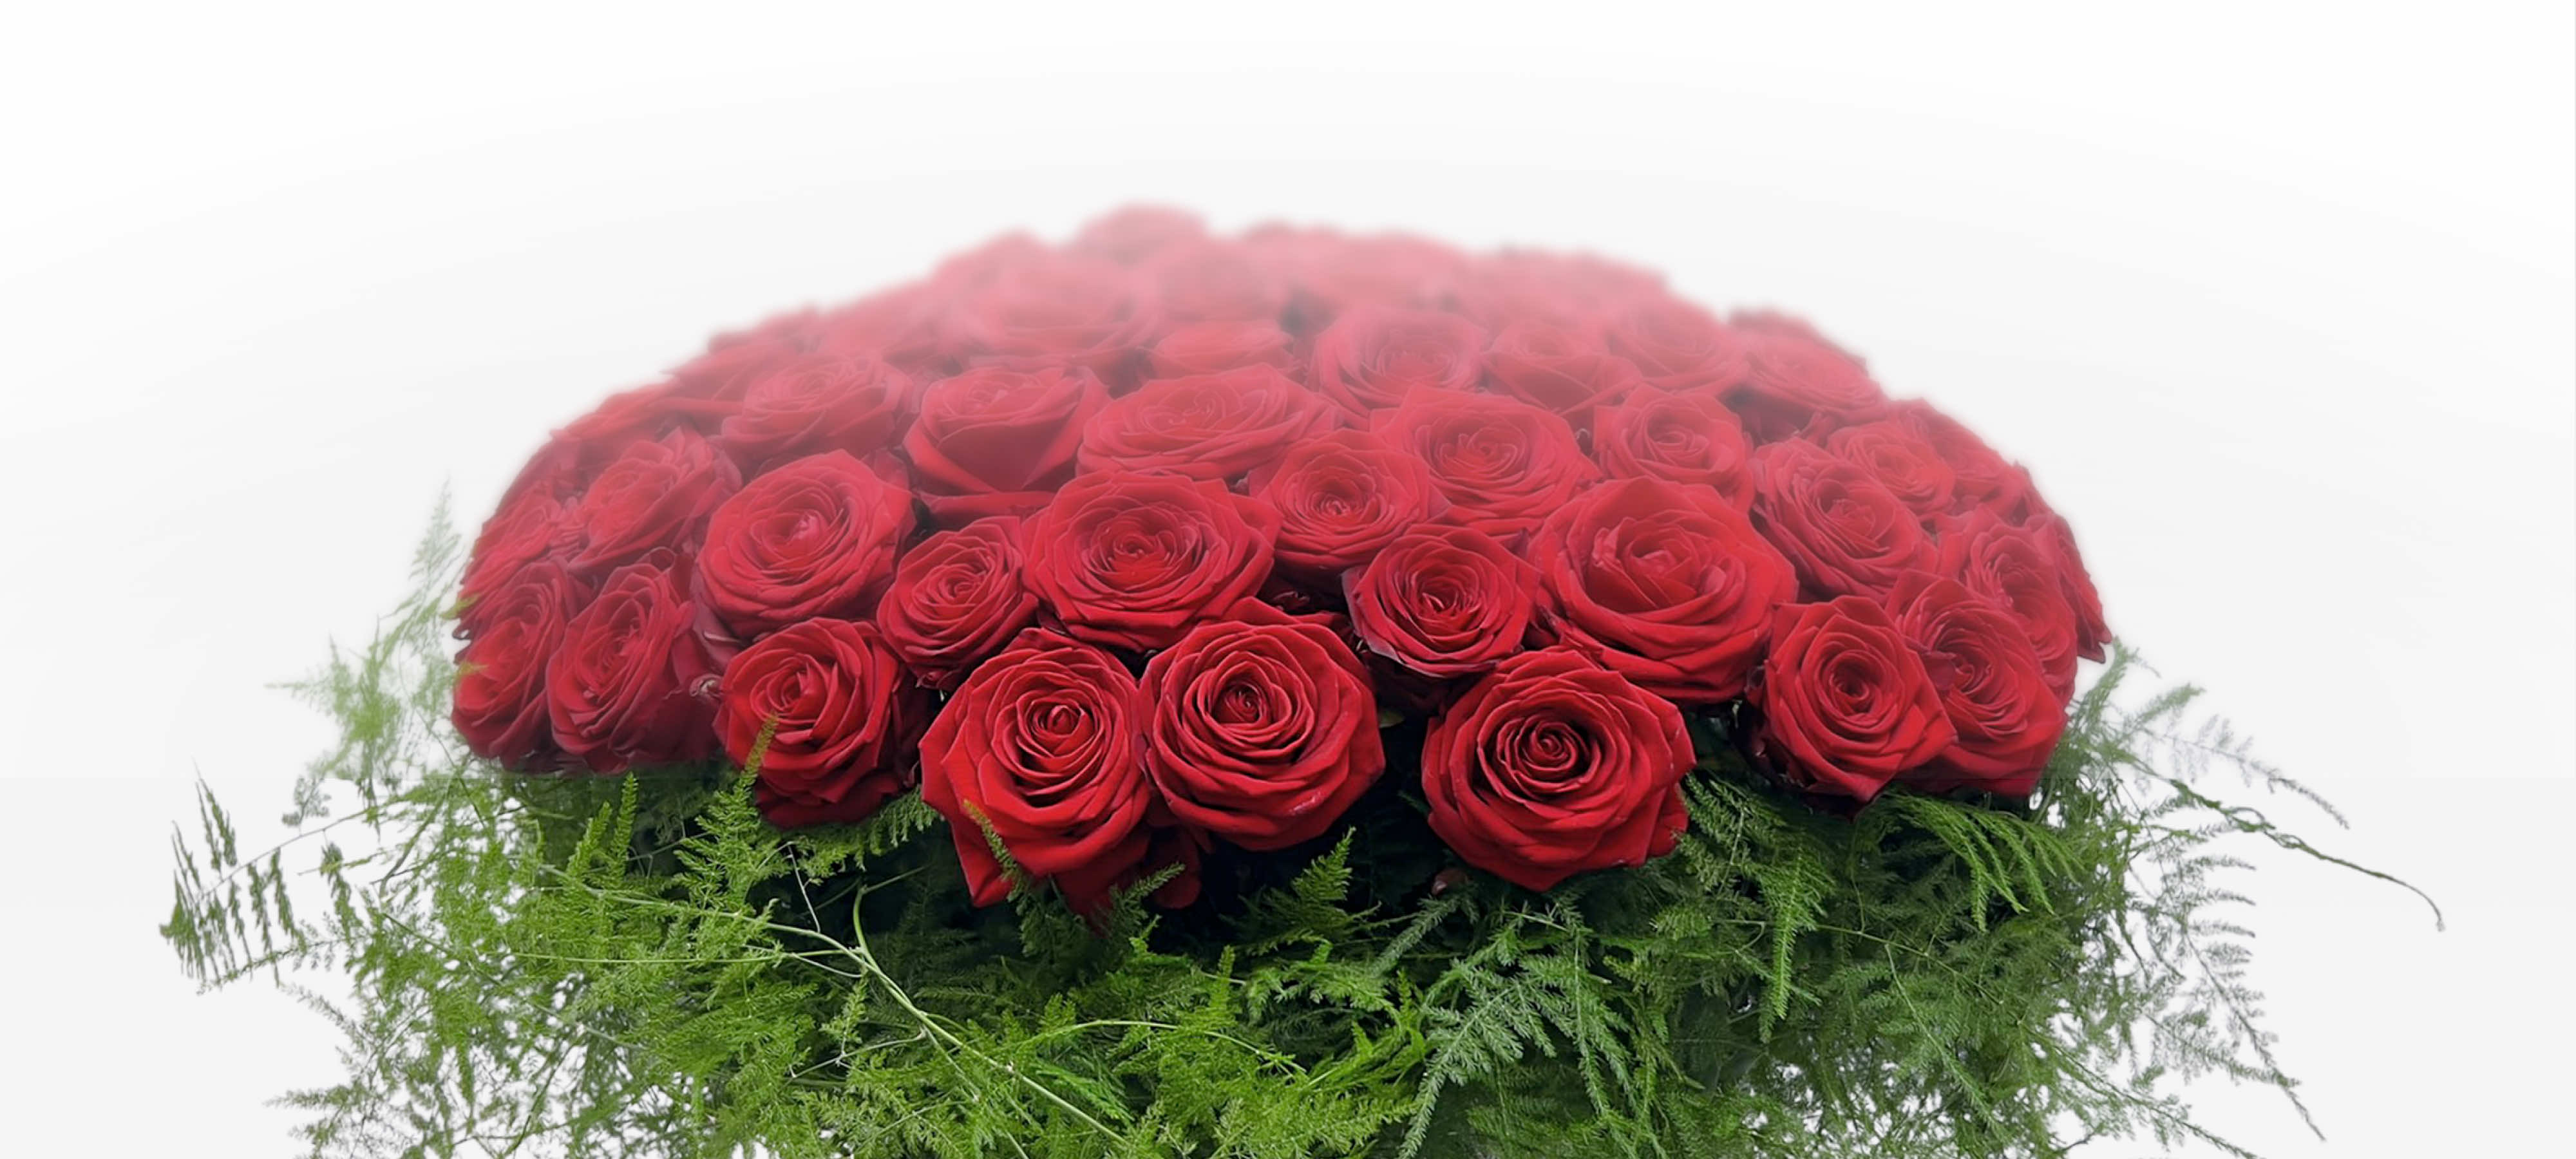 100 grandes roses rouges pour dire je t'aime.